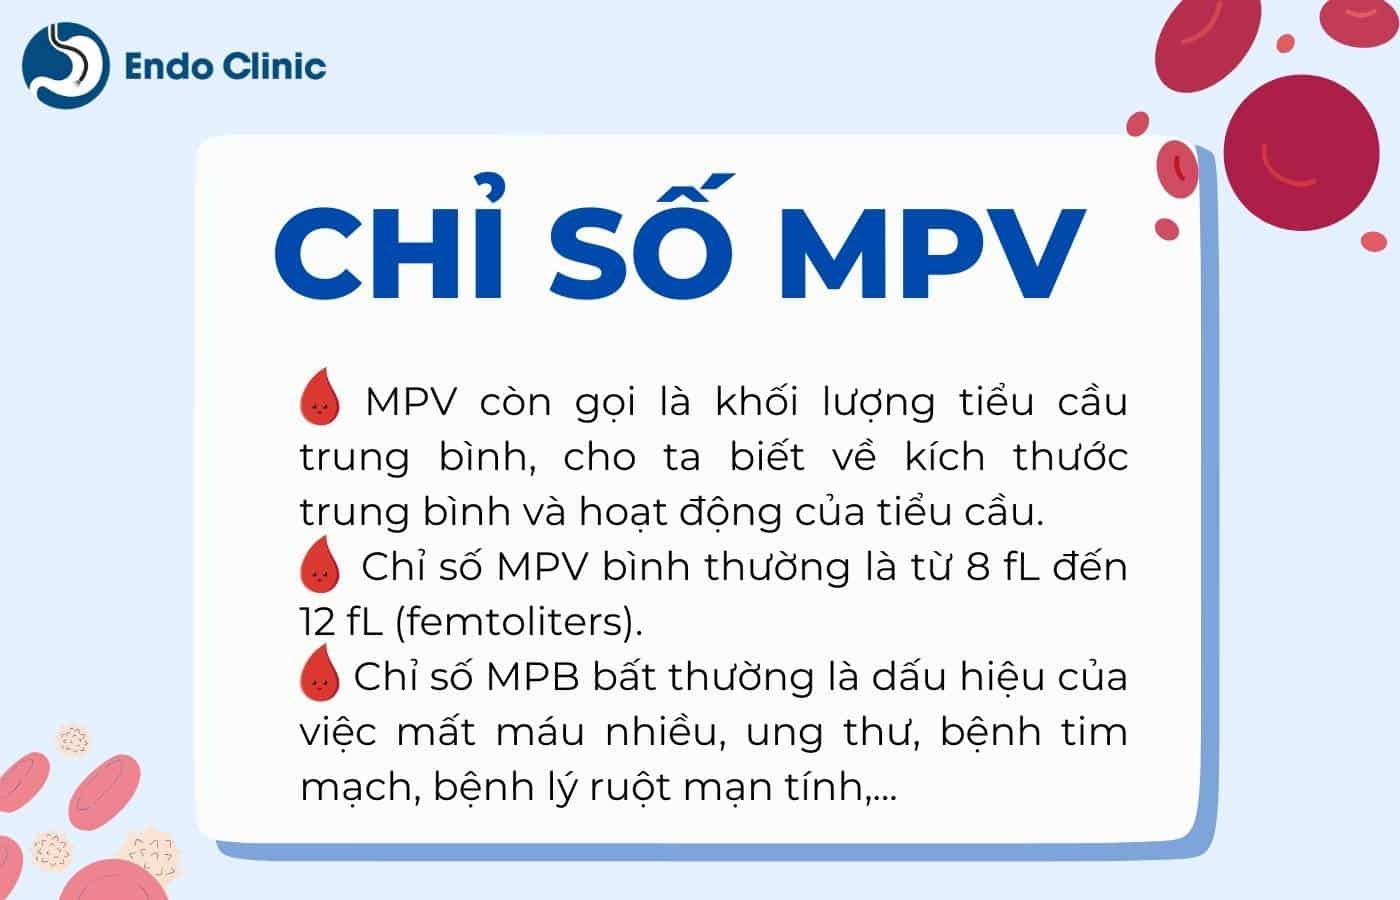 Tổng quan chỉ số MPV trong xét nghiệm công thức máu như thế nào